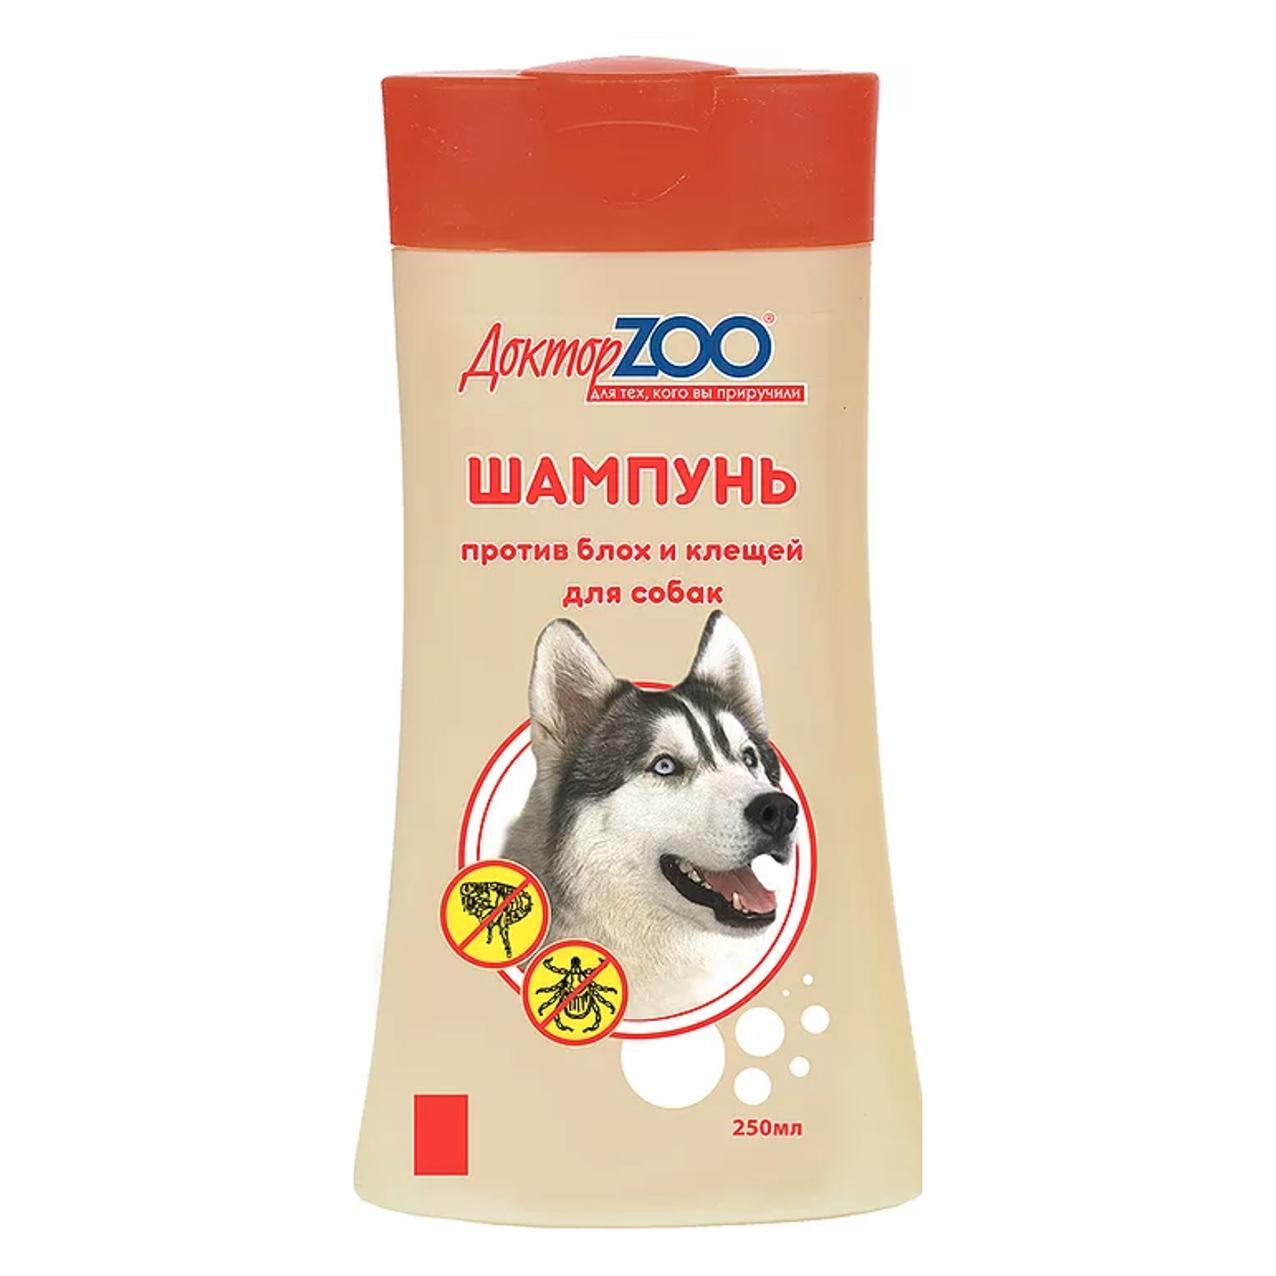 Доктор ZOO Шампунь для собак против блох и клещей